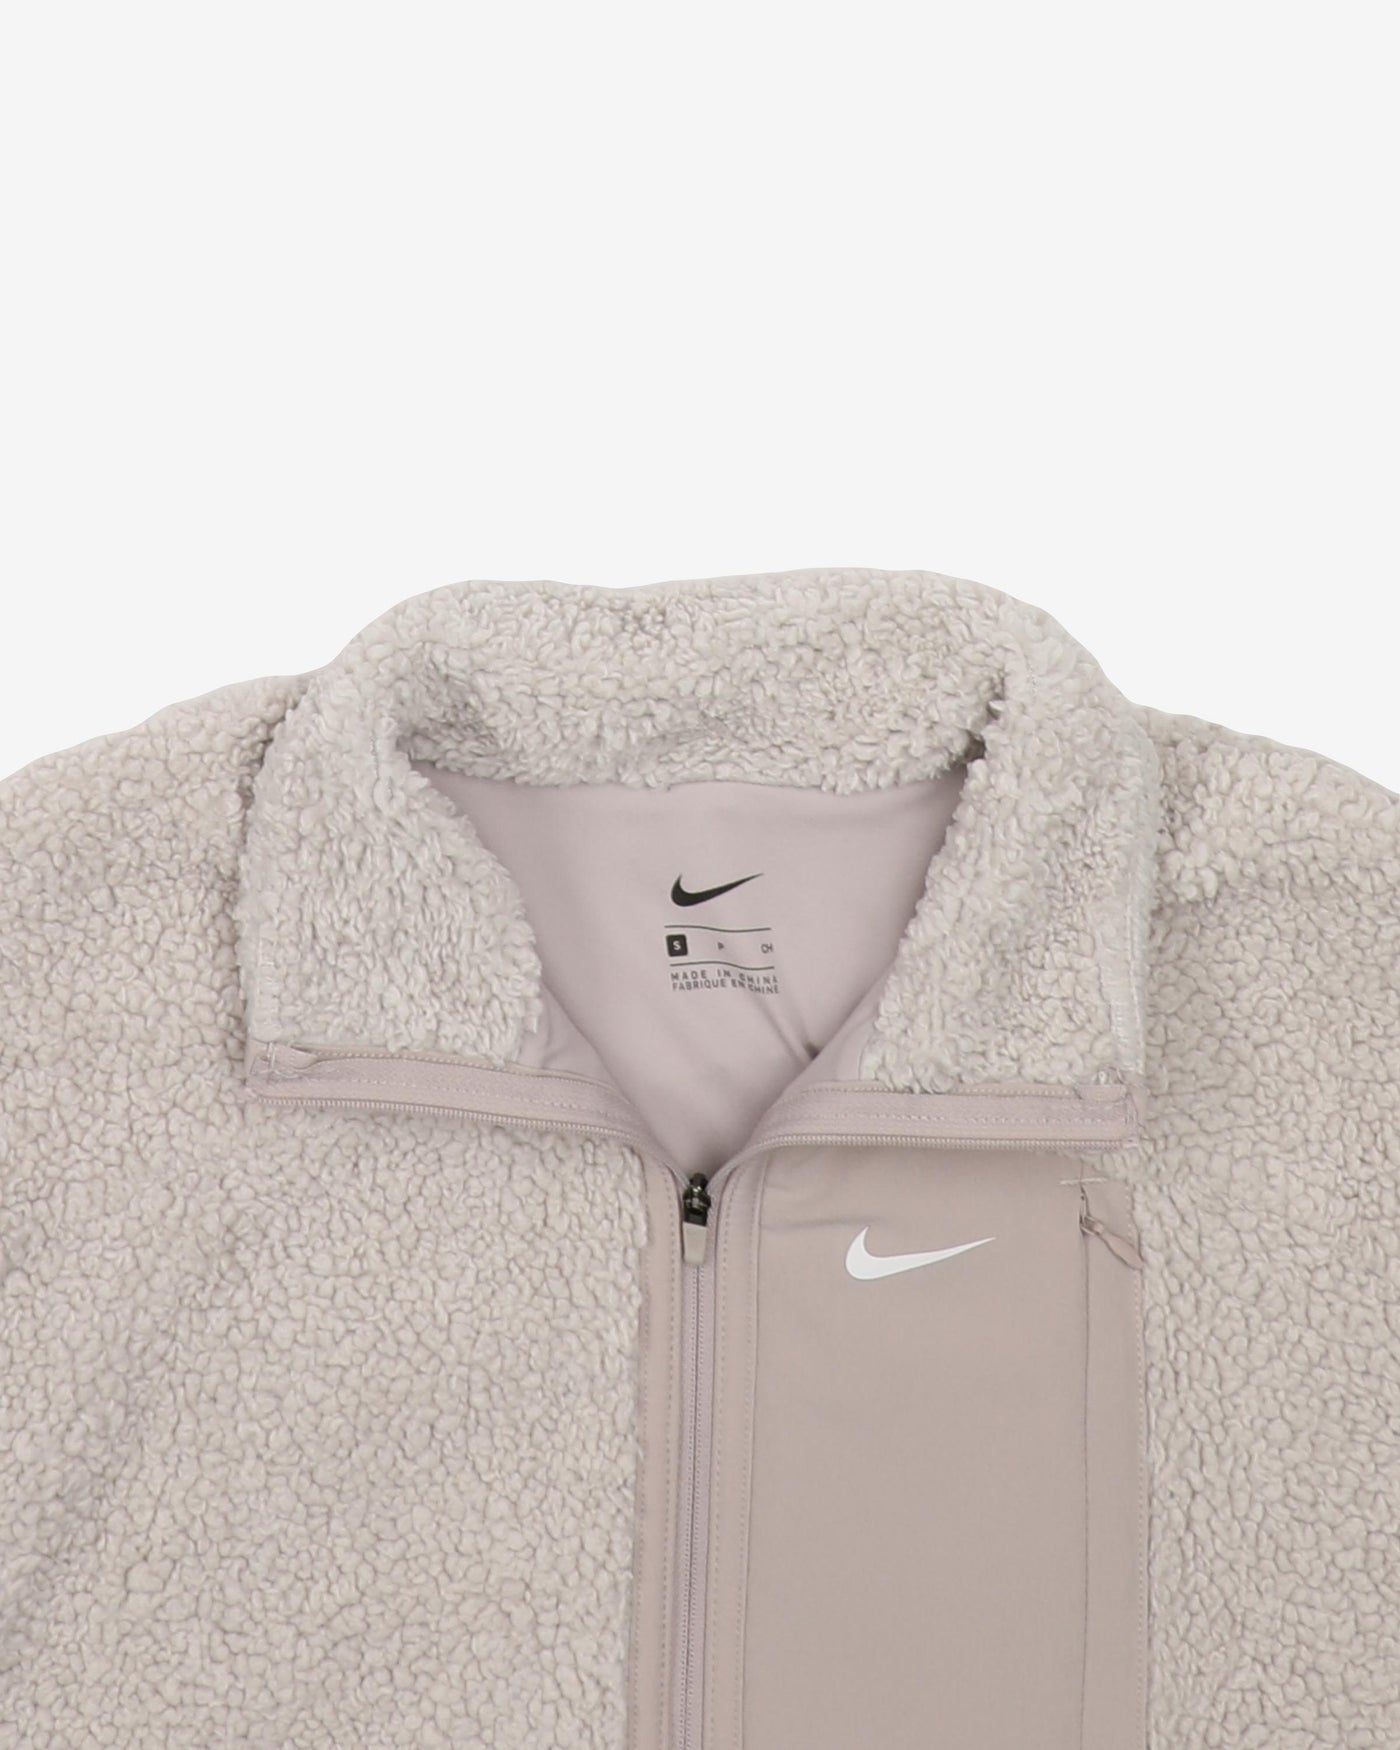 Nike Full-Zip Off-White / Grey Fleece - S